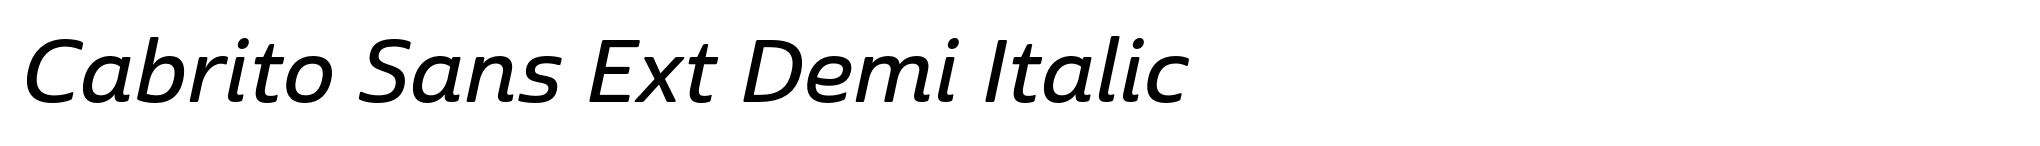 Cabrito Sans Ext Demi Italic image